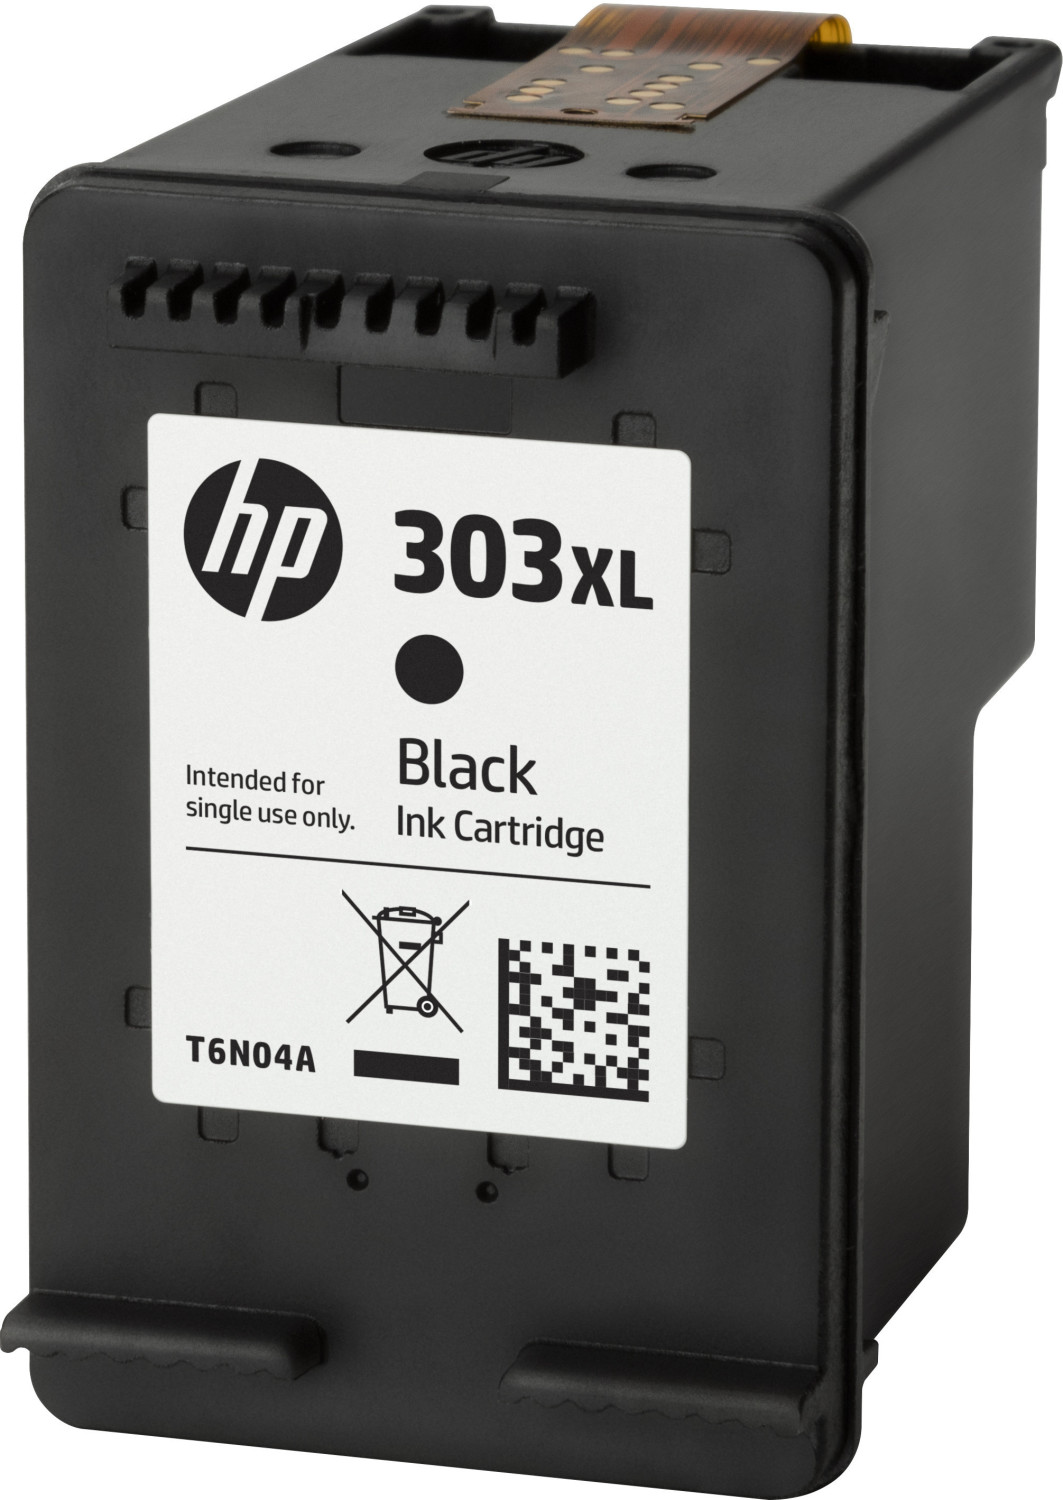 HP 303 XL Noir - Cartouche d'encre compatible Grande Capacité pas cher